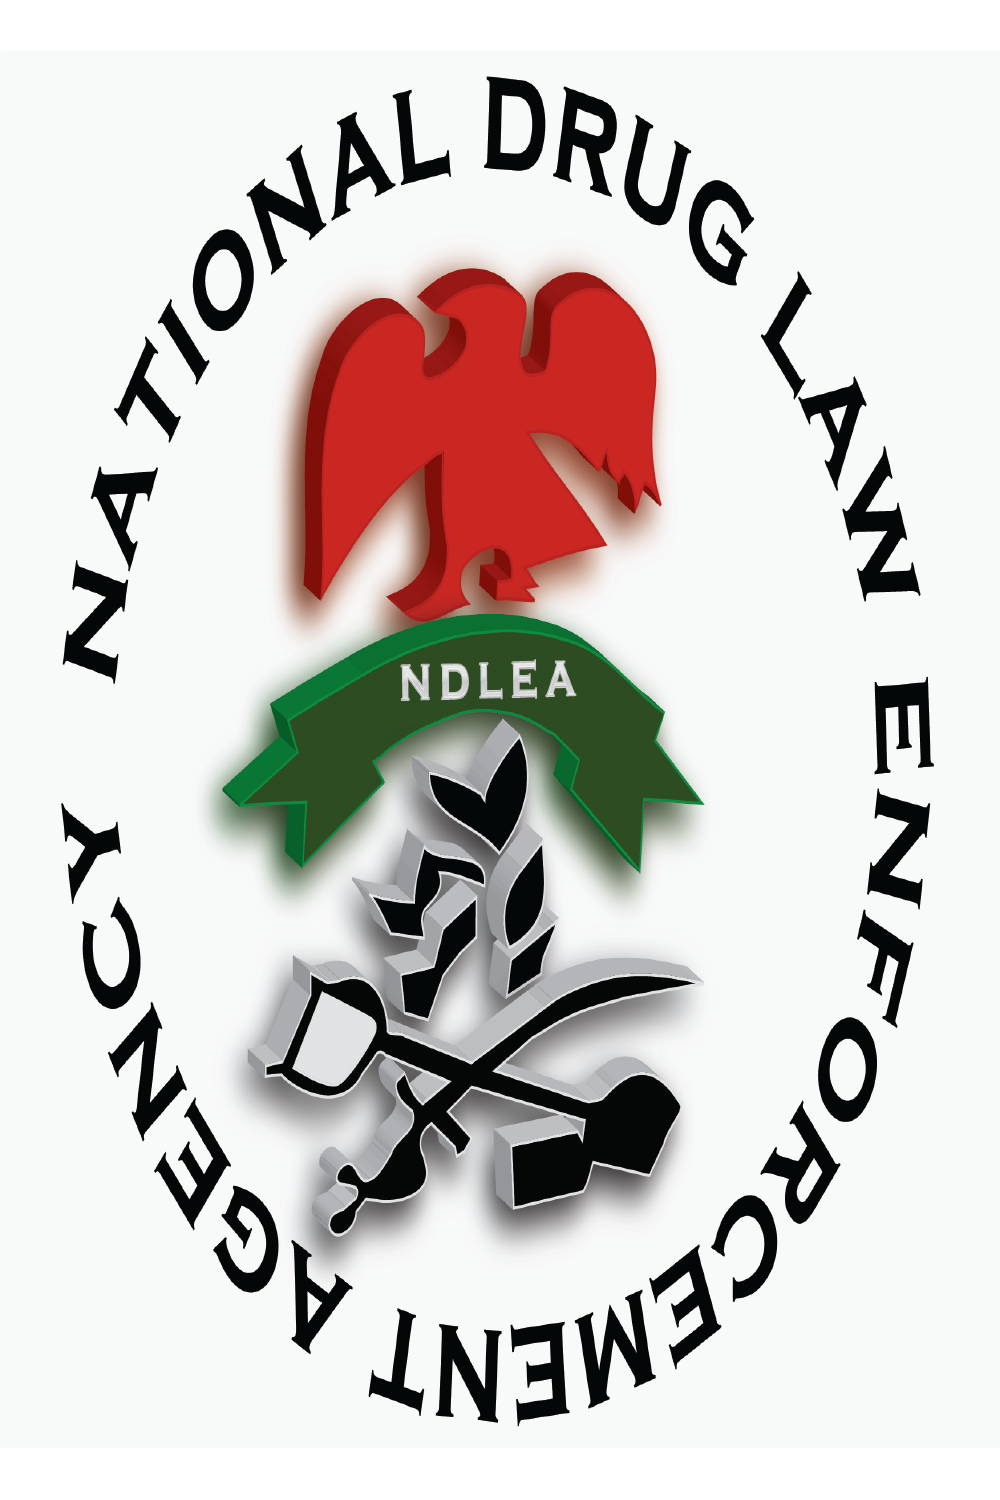 National drug Law (Logo) Design pinterest preview image.